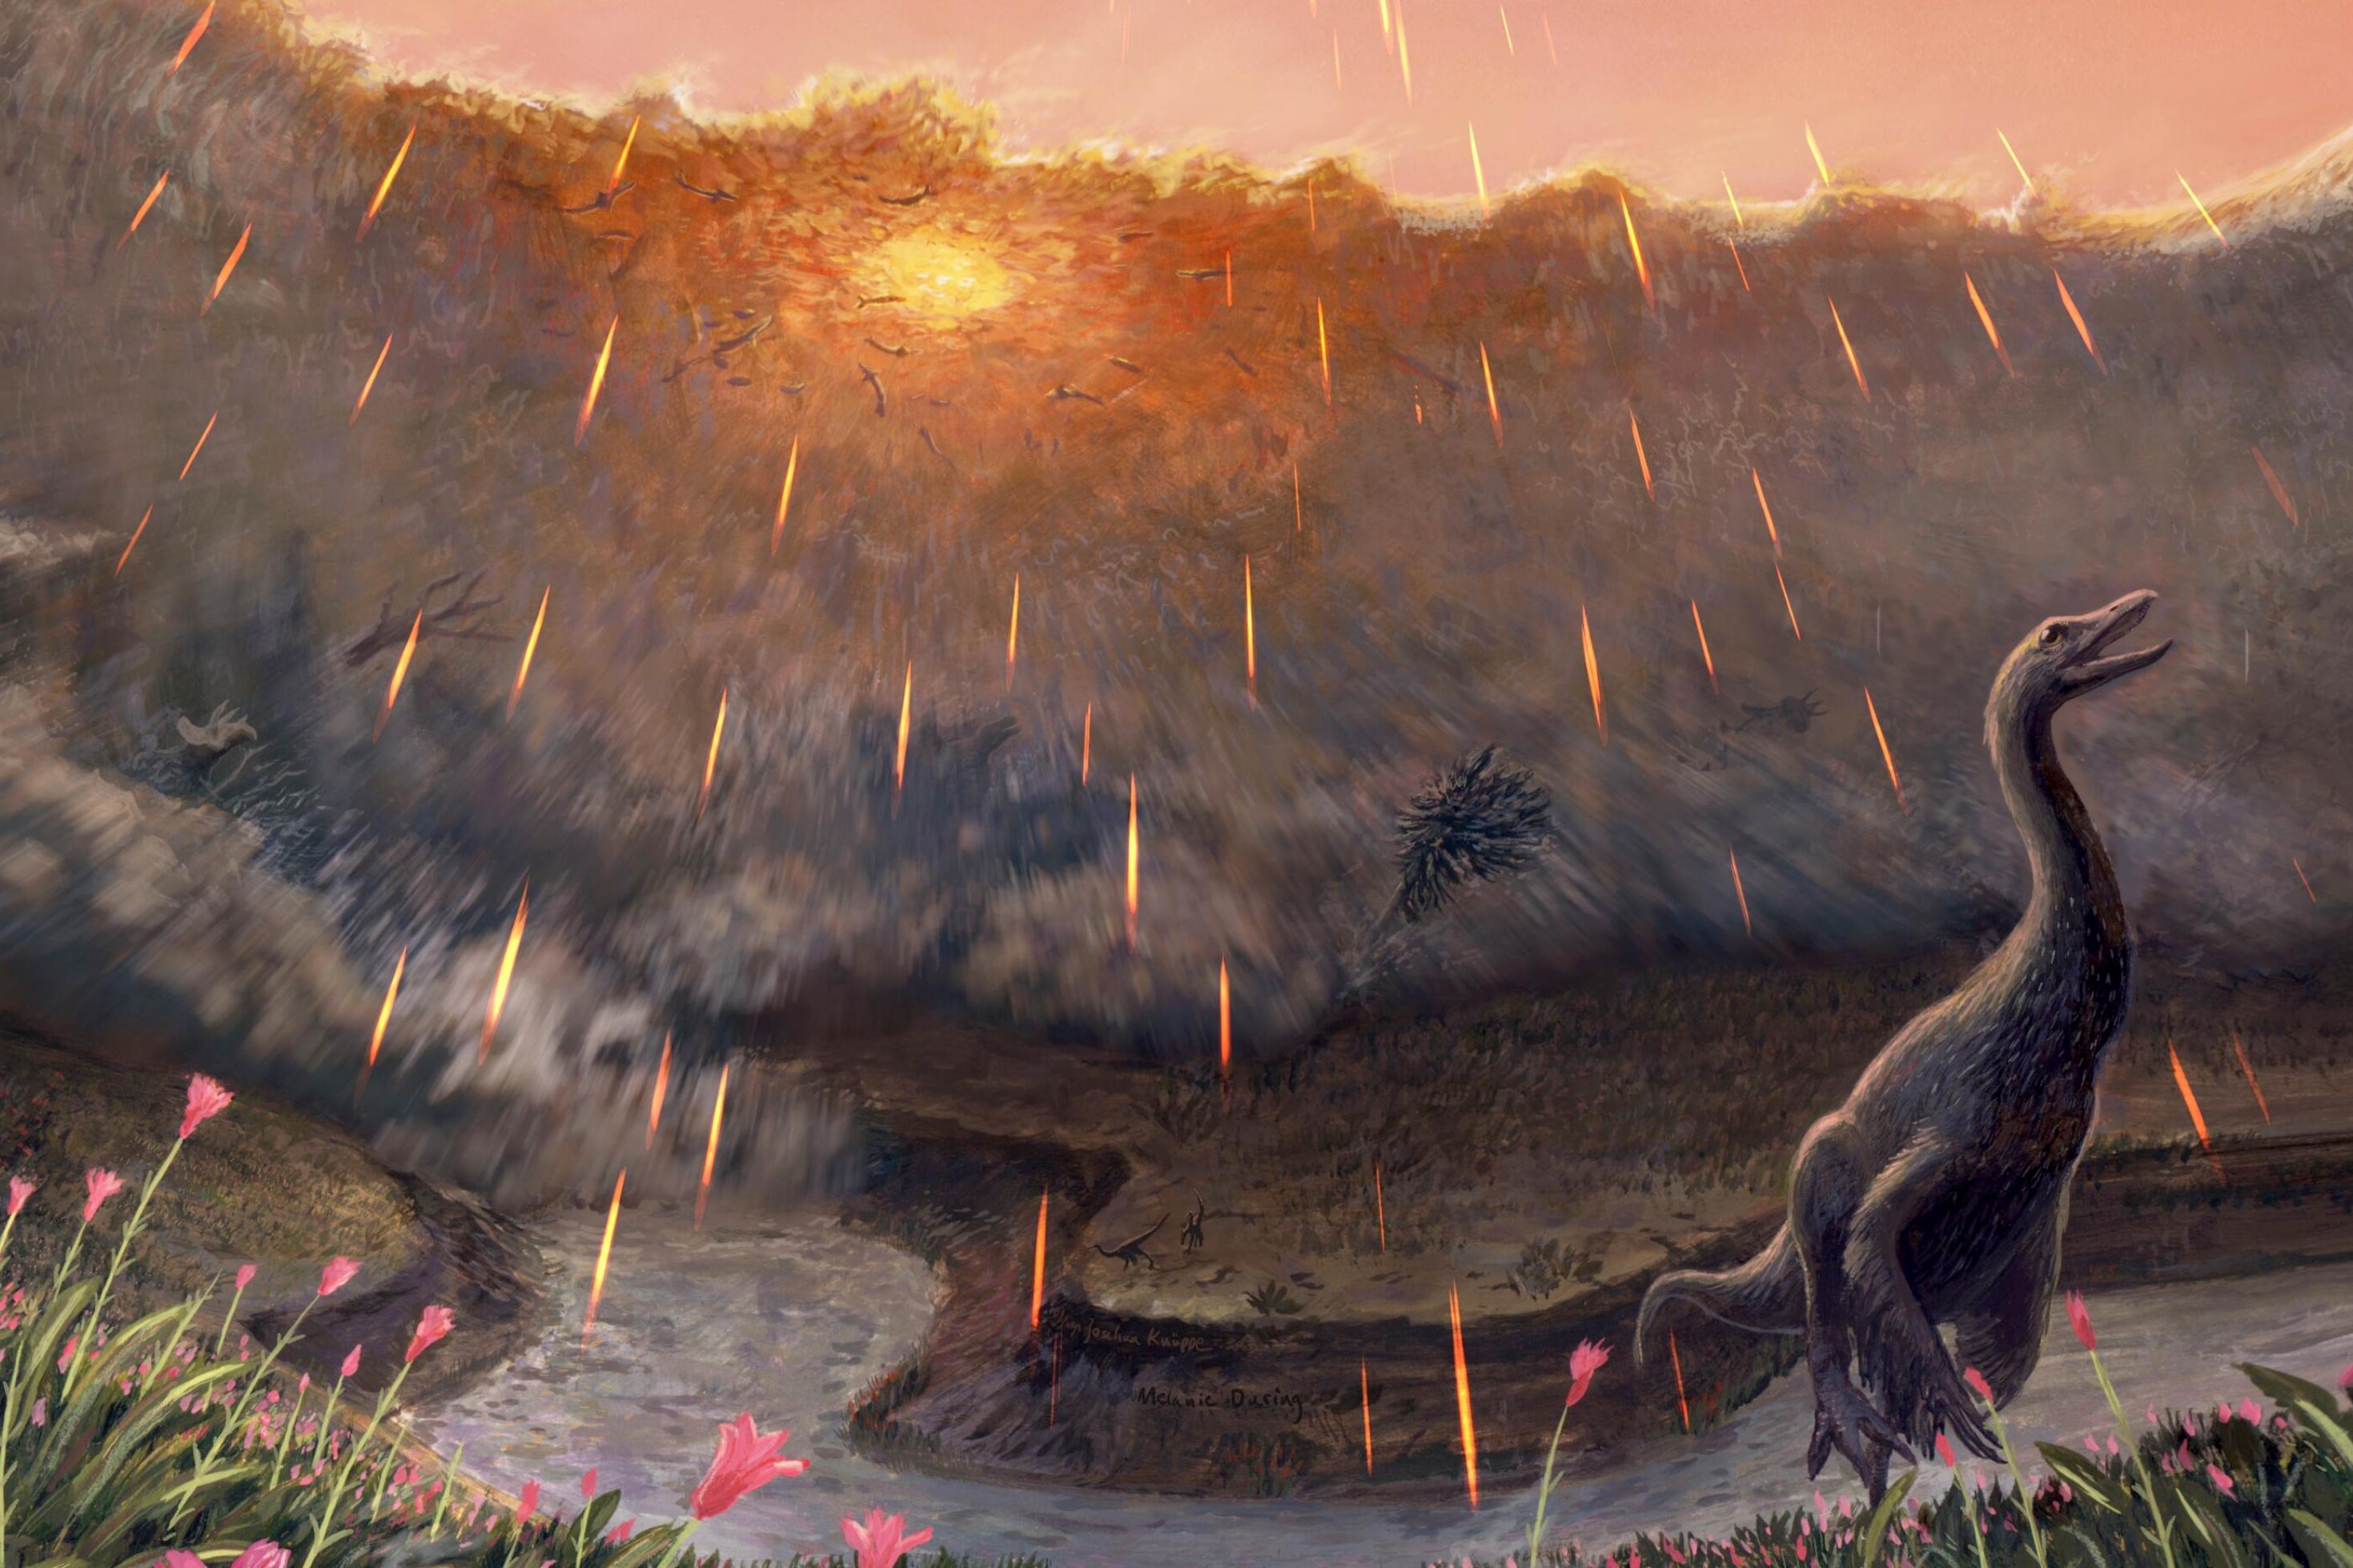 Farbige Zeichnung: Ein gewundener Fluss, mit pinken Blumen, in dem ein vierbeiniger Dinosaurier steht, mit dem Kopf gen Himmel gerichtet. Im Hintergrund erhebt sich eine haushohe Flutwelle. Vom unnatürlich violetten Himmel fallen glühende Geschosse, die man nur als Linien erkennt.